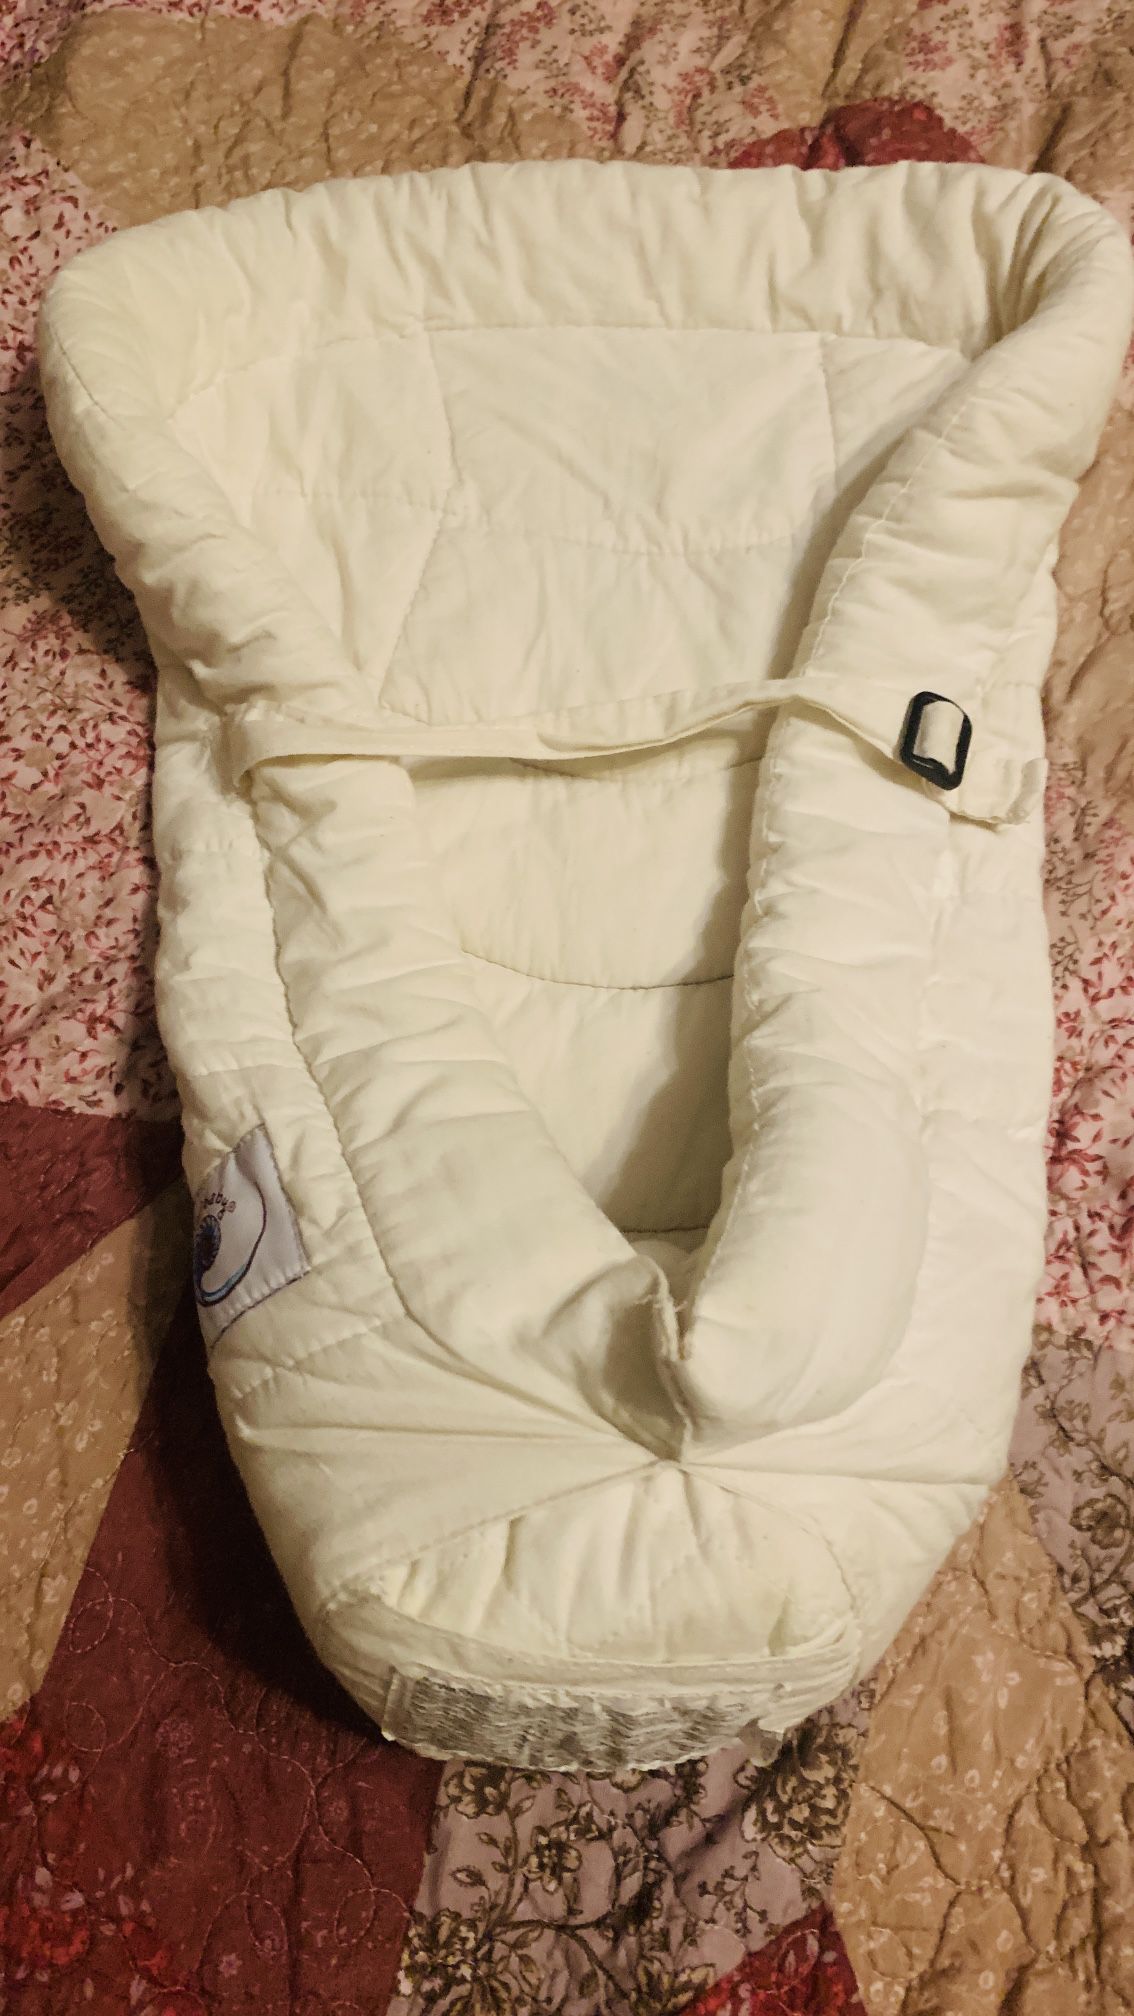 Ergobaby Infant Insert Carrier Pillow